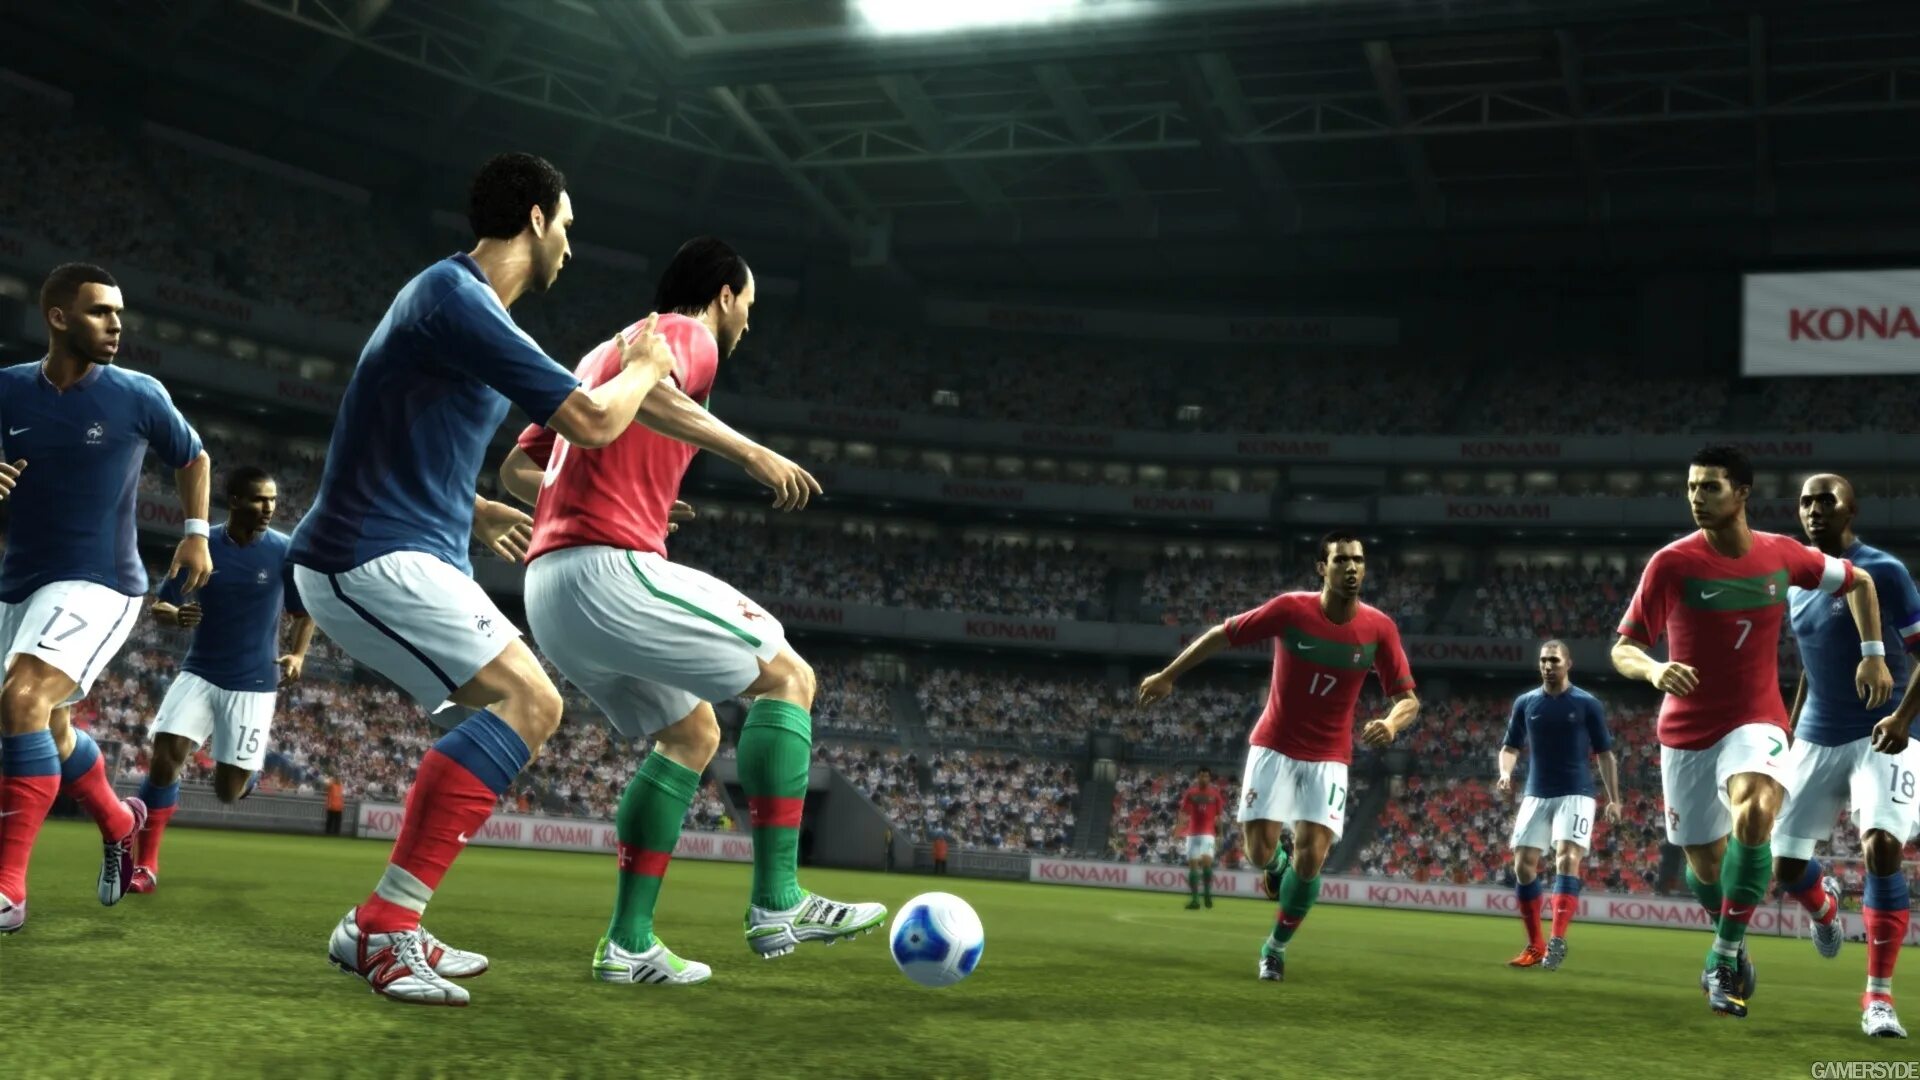 Pro Evolution Soccer 2013 Konami. Pro Evolution Soccer 3. Pro Evolution Soccer 2013 для компьютера. Pro Evolution Soccer 2012 без интернета. Игры 2012 2015